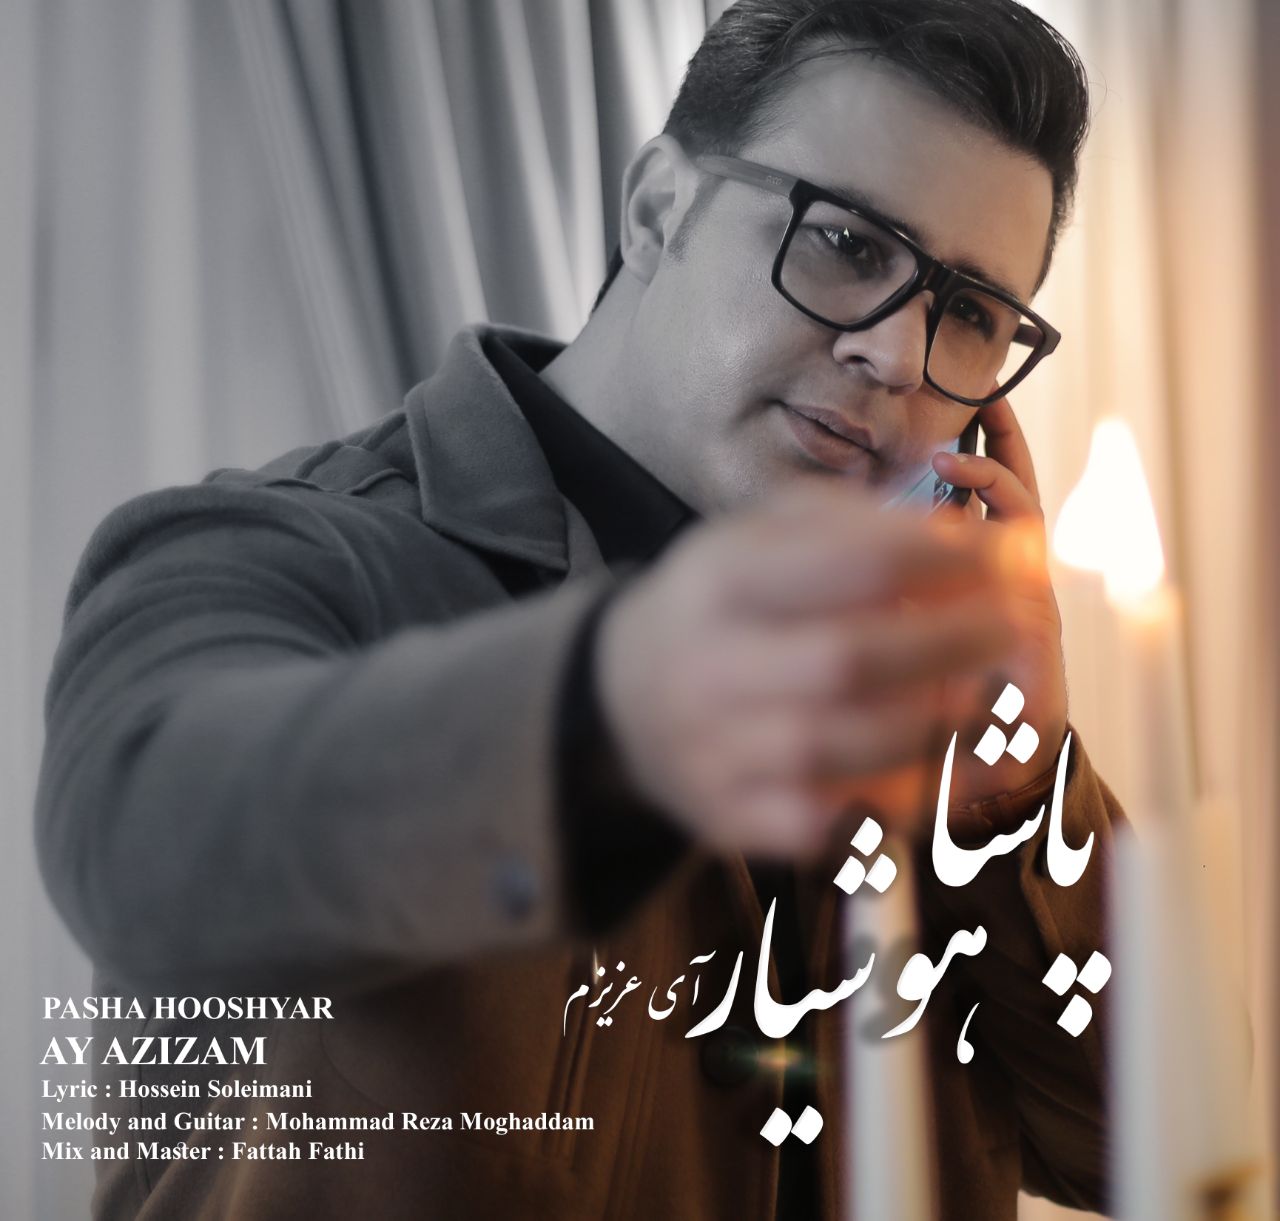  دانلود آهنگ جدید پاشا هوشیار - ای عزیزم | Download New Music By Pasha Hooshyar - Ay Azizam